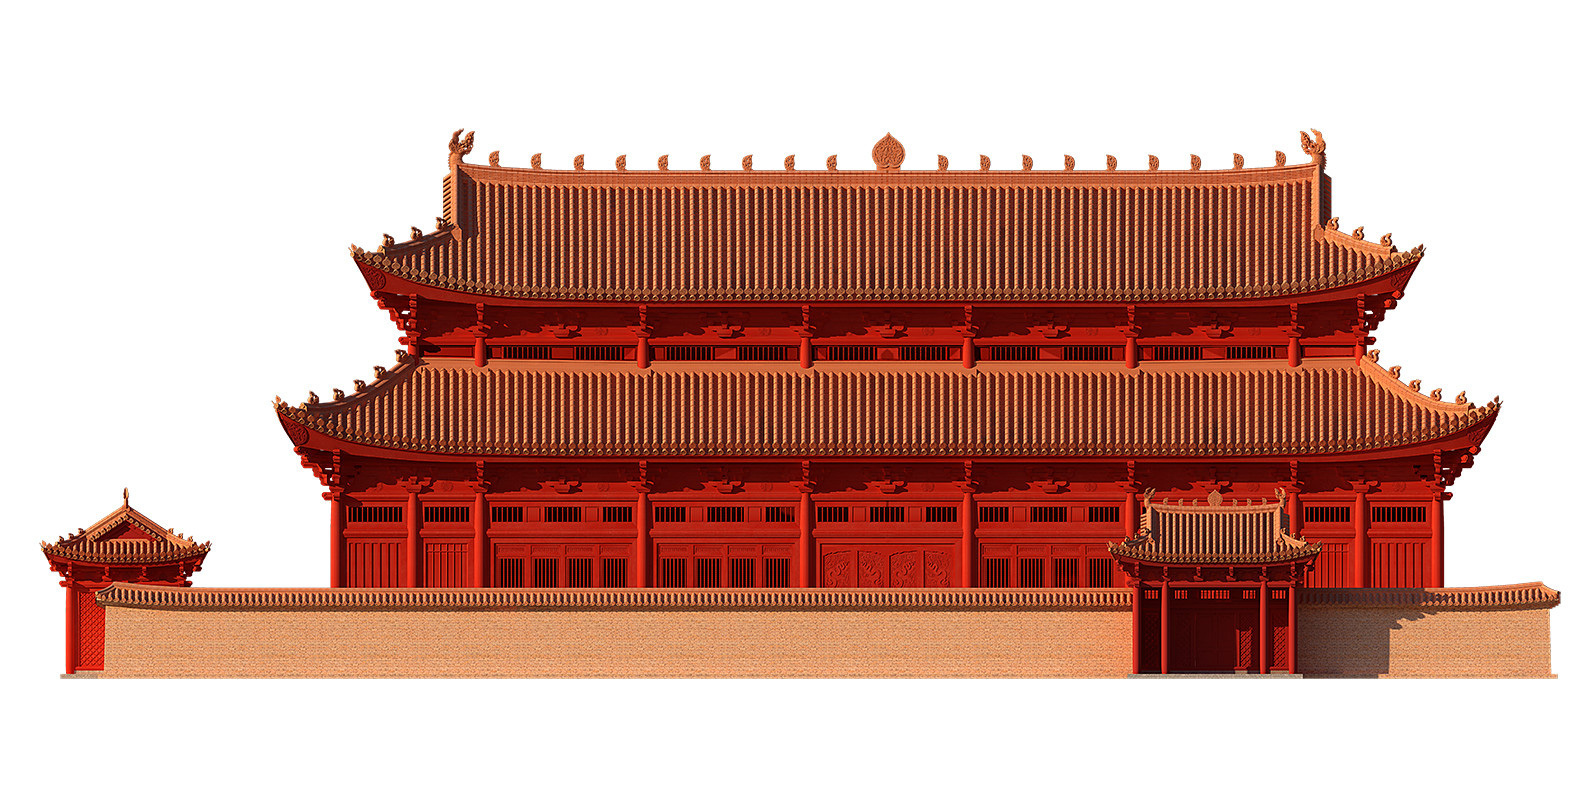 Hoàng Thành Thăng Long là di sản văn hóa thế giới được UNESCO công nhận. Với hàng ngàn năm lịch sử và văn hóa đan xen trong kiến trúc đẹp mắt, Hoàng Thành Thăng Long là địa chỉ tham quan không thể bỏ qua đối với mọi du khách đến Hà Nội. Và bạn sẽ phải ngạc nhiên khi biết về phát hiện quan trọng gần đây tại đây!